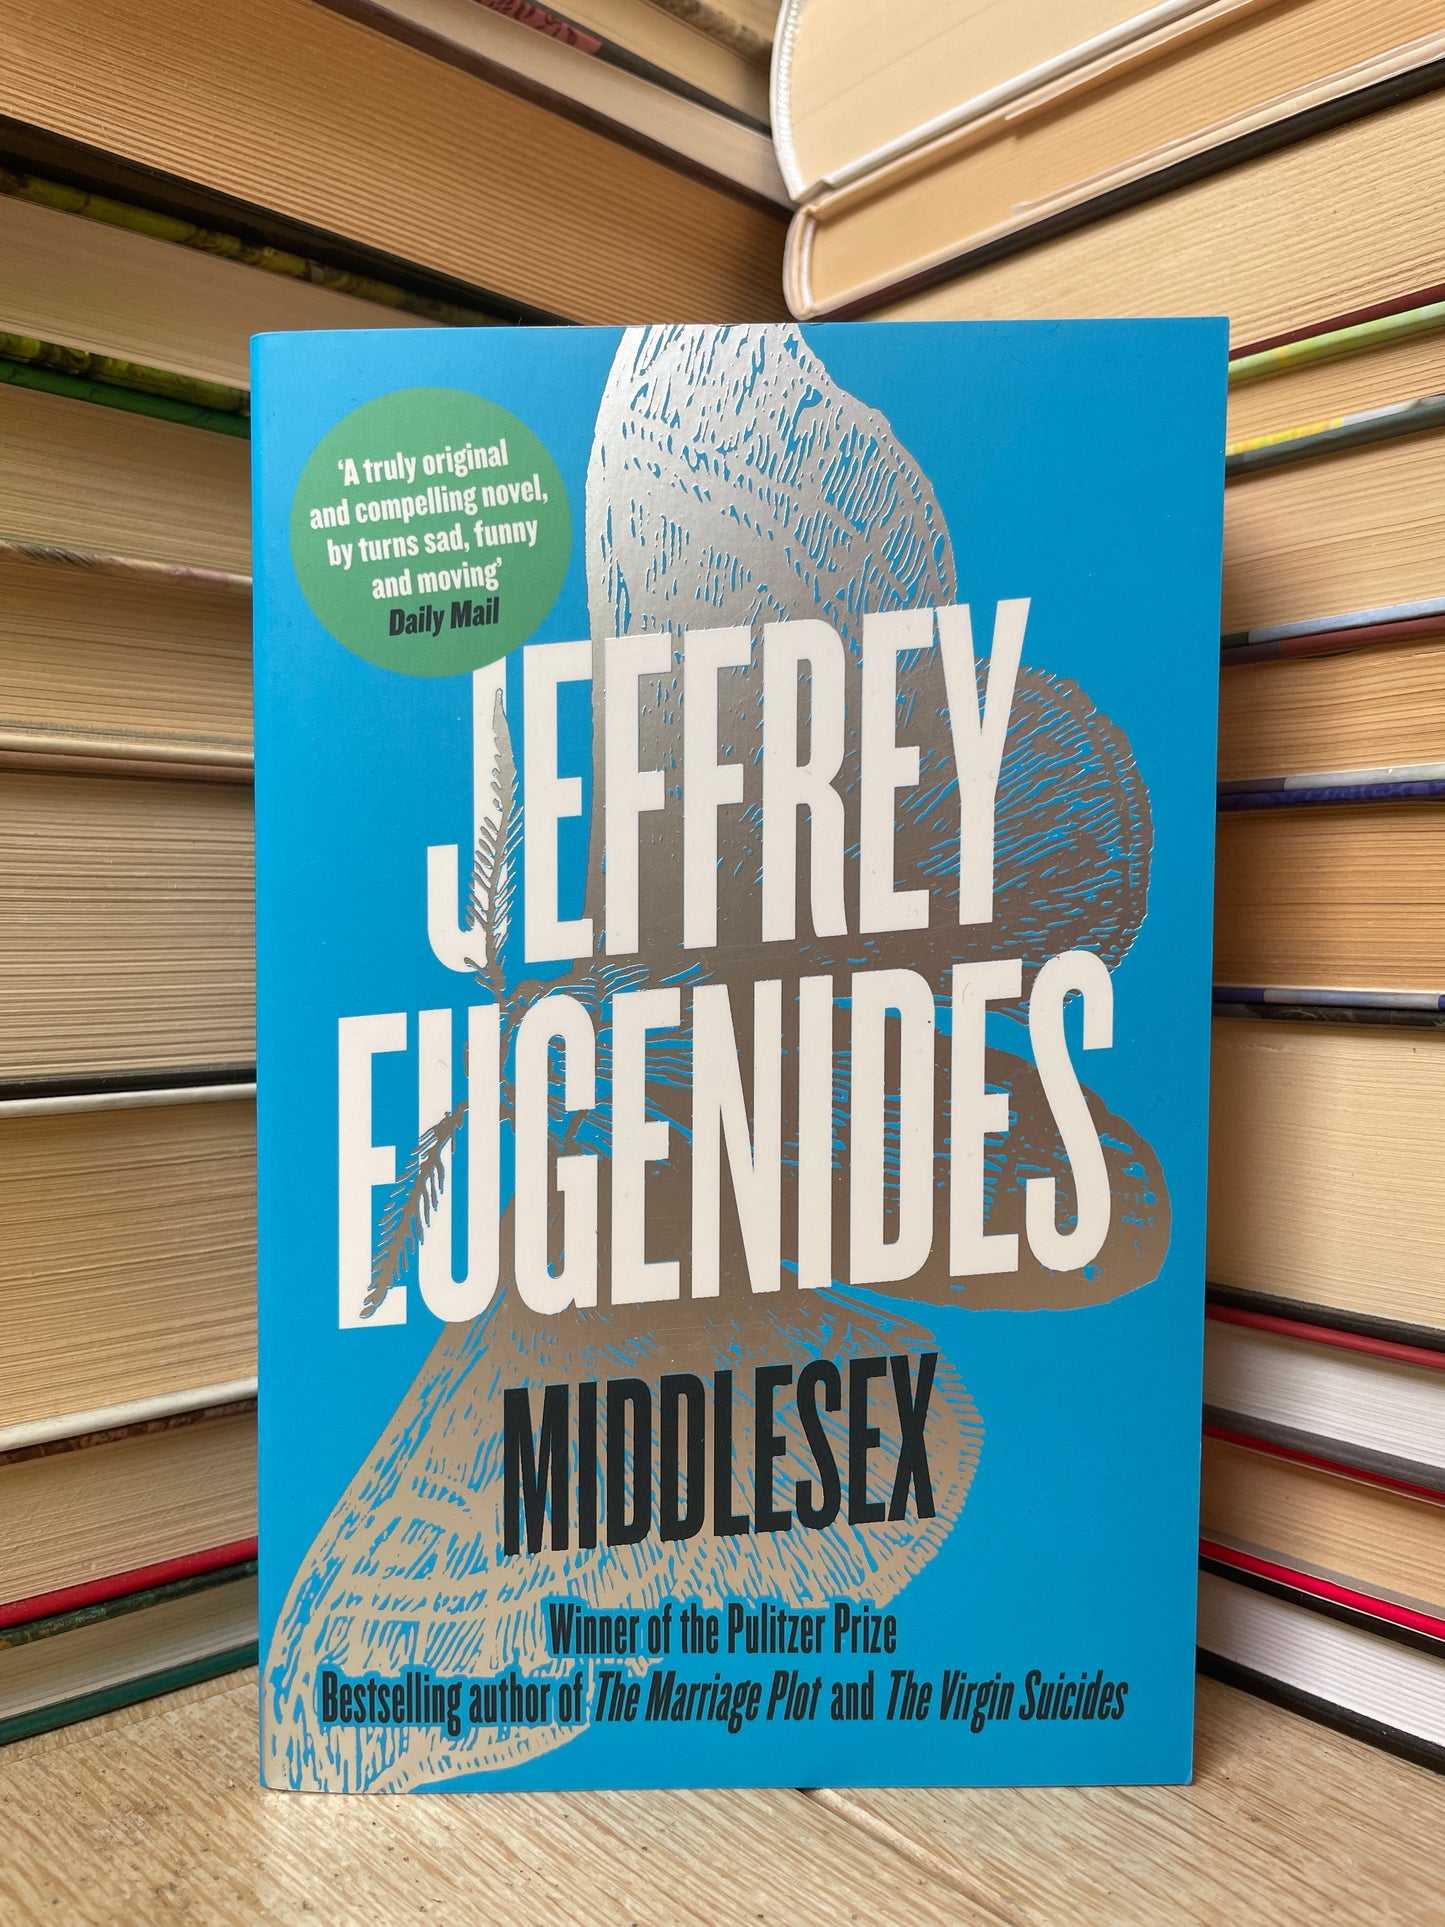 Jeffrey Eugenides - Middlesex